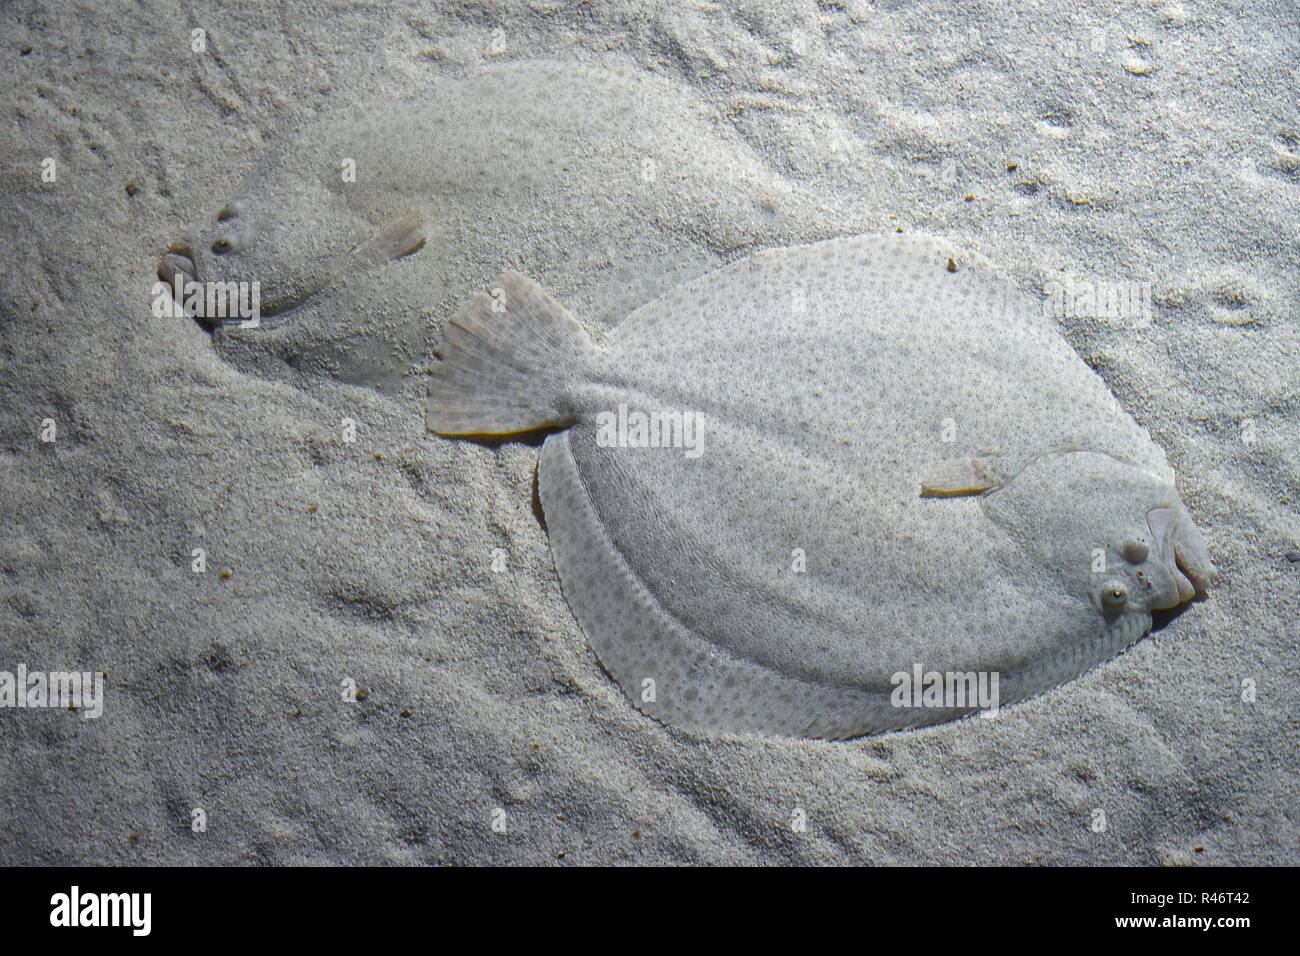 Chiudere fino a due rombi di specie demersali flatfishes nascondendo la sabbia sul fondo del mare, ad alto angolo di visione Foto Stock